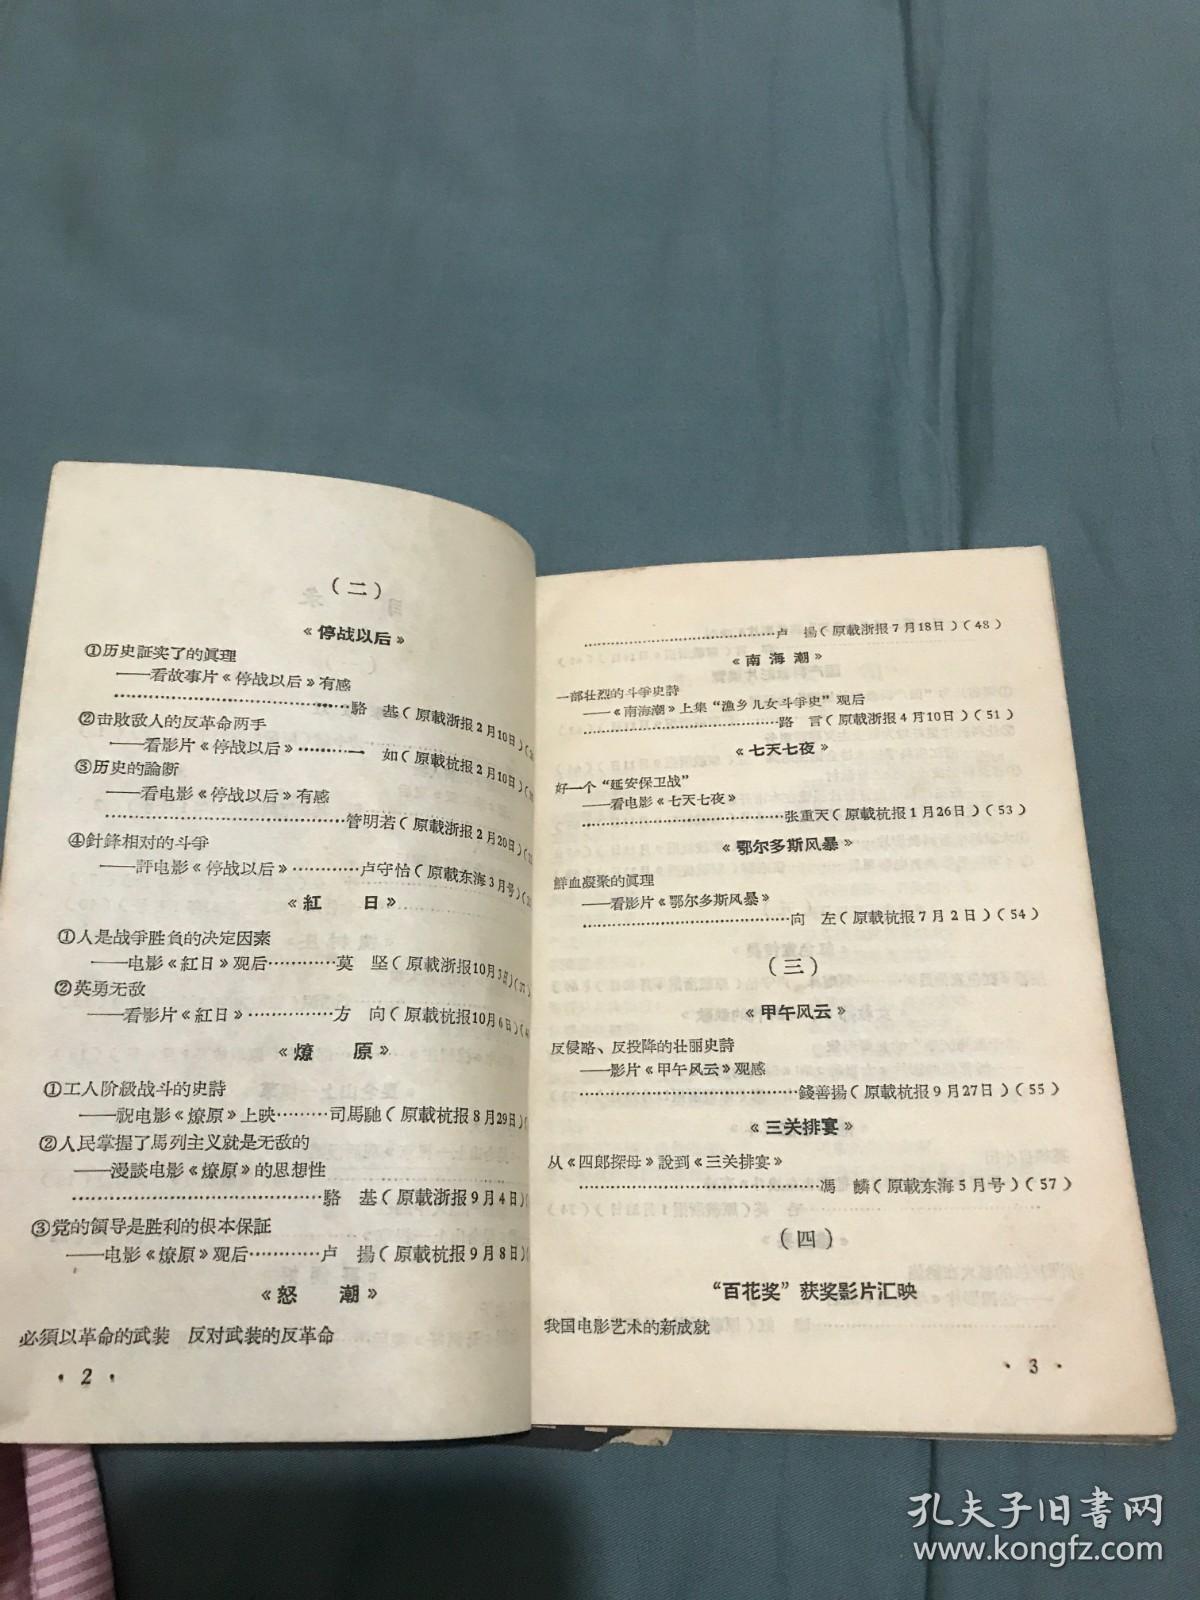 电影评论集 浙江省电影发行放映公司 1964